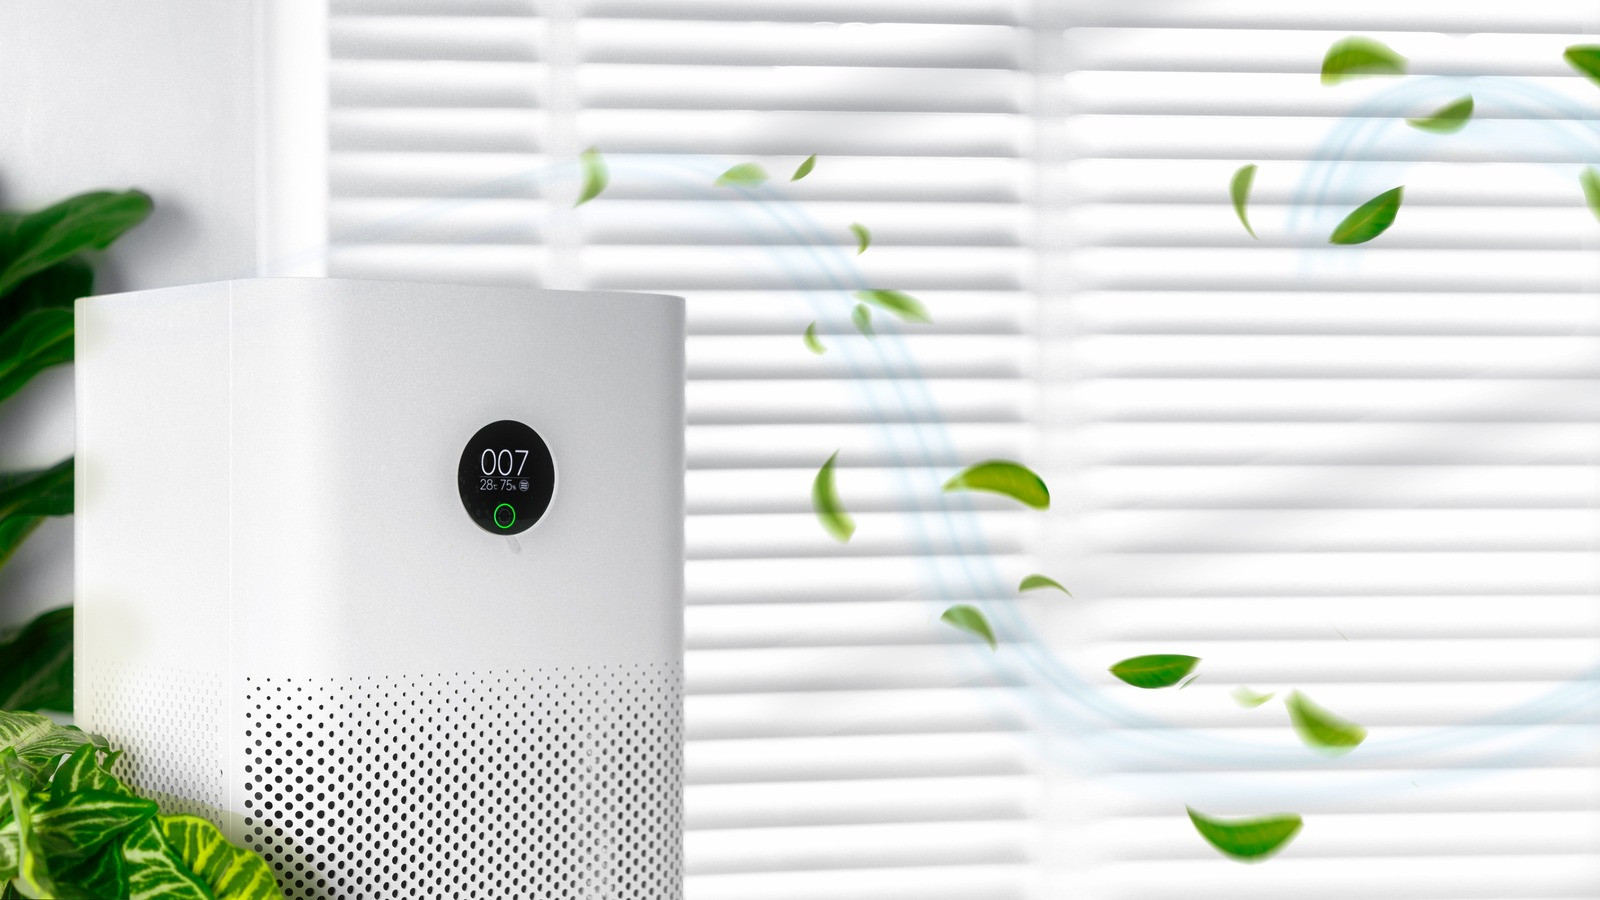 10 تا از پرفروش ترین دستگاه های تصفیه هوا برای خانه شما، رتبه بندی شده بر اساس قیمت